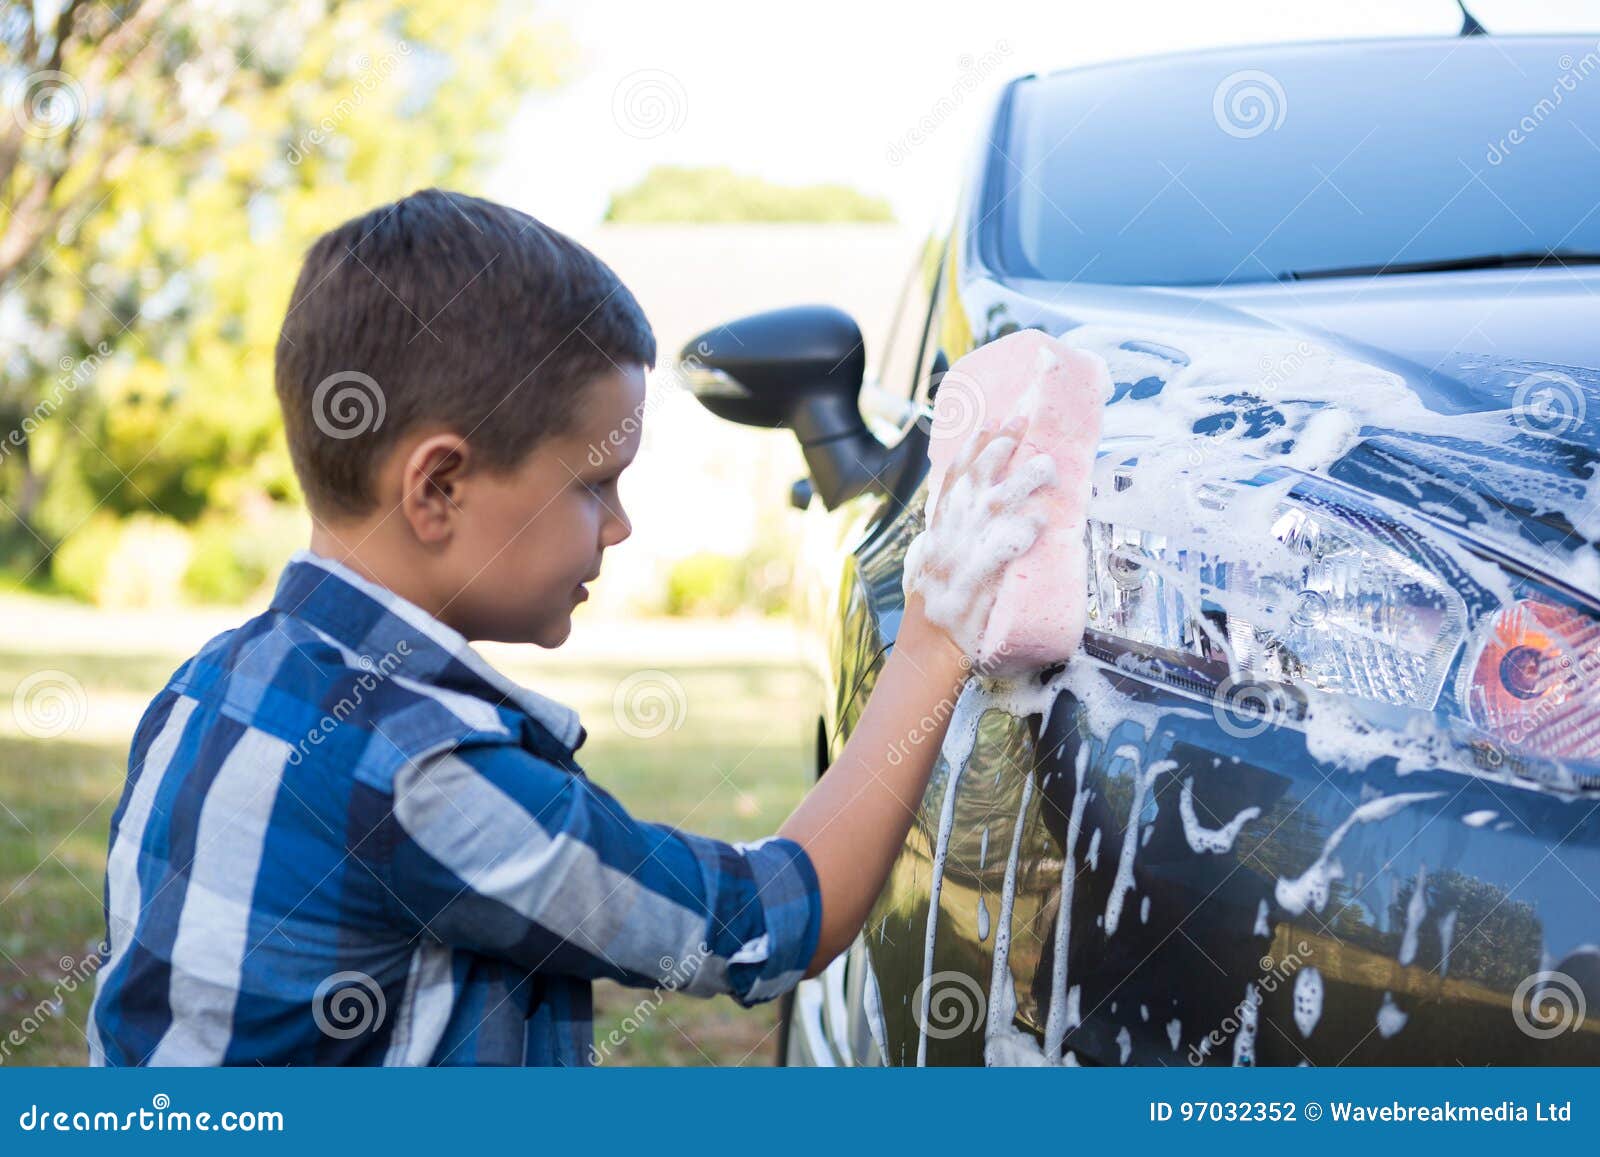 Песни мальчик на машине. Мальчик моет машину. Мойка автомобилей подростками. Дети моют машину. Подросток моет машину.